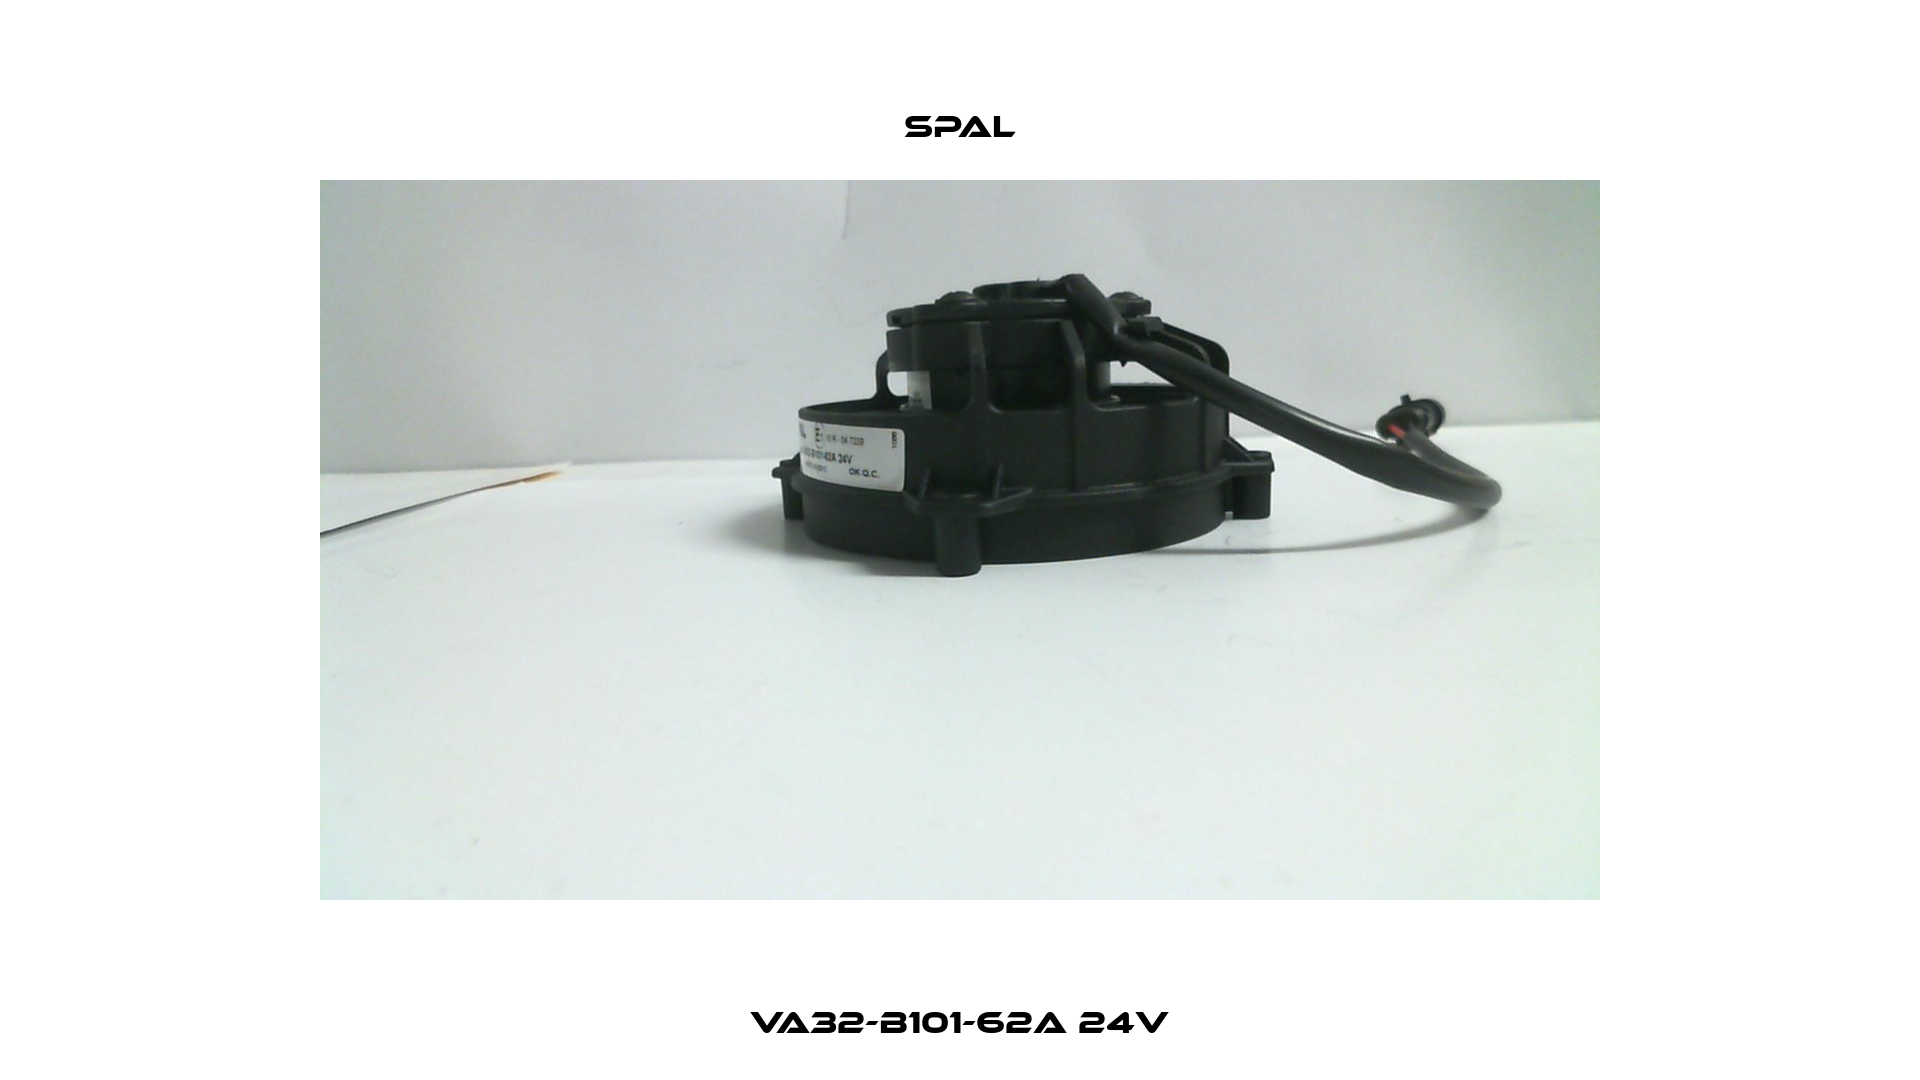 VA32-B101-62A 24V SPAL